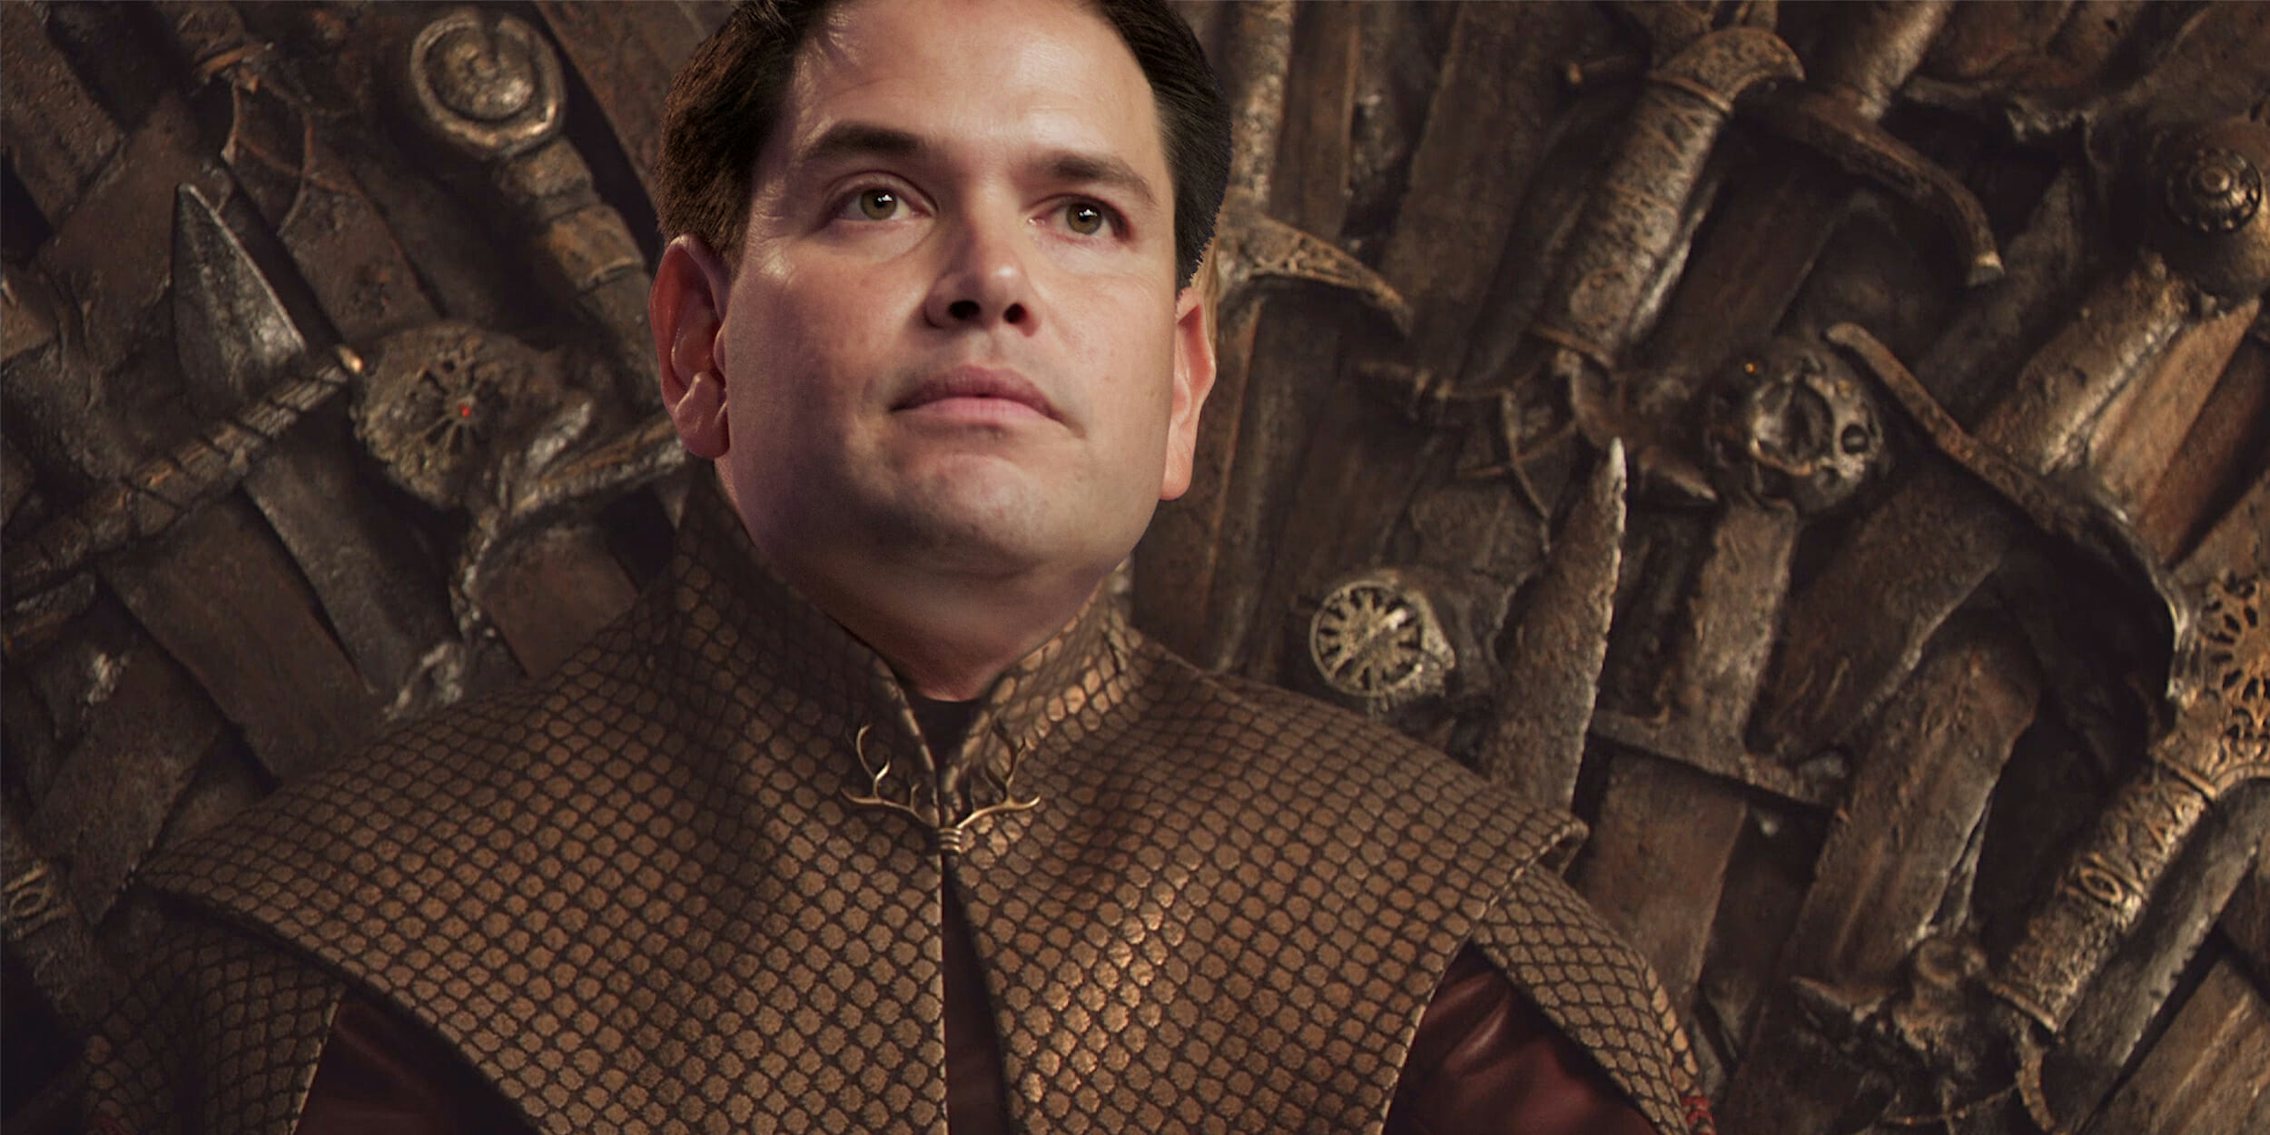 Marco Rubio on the Iron Throne